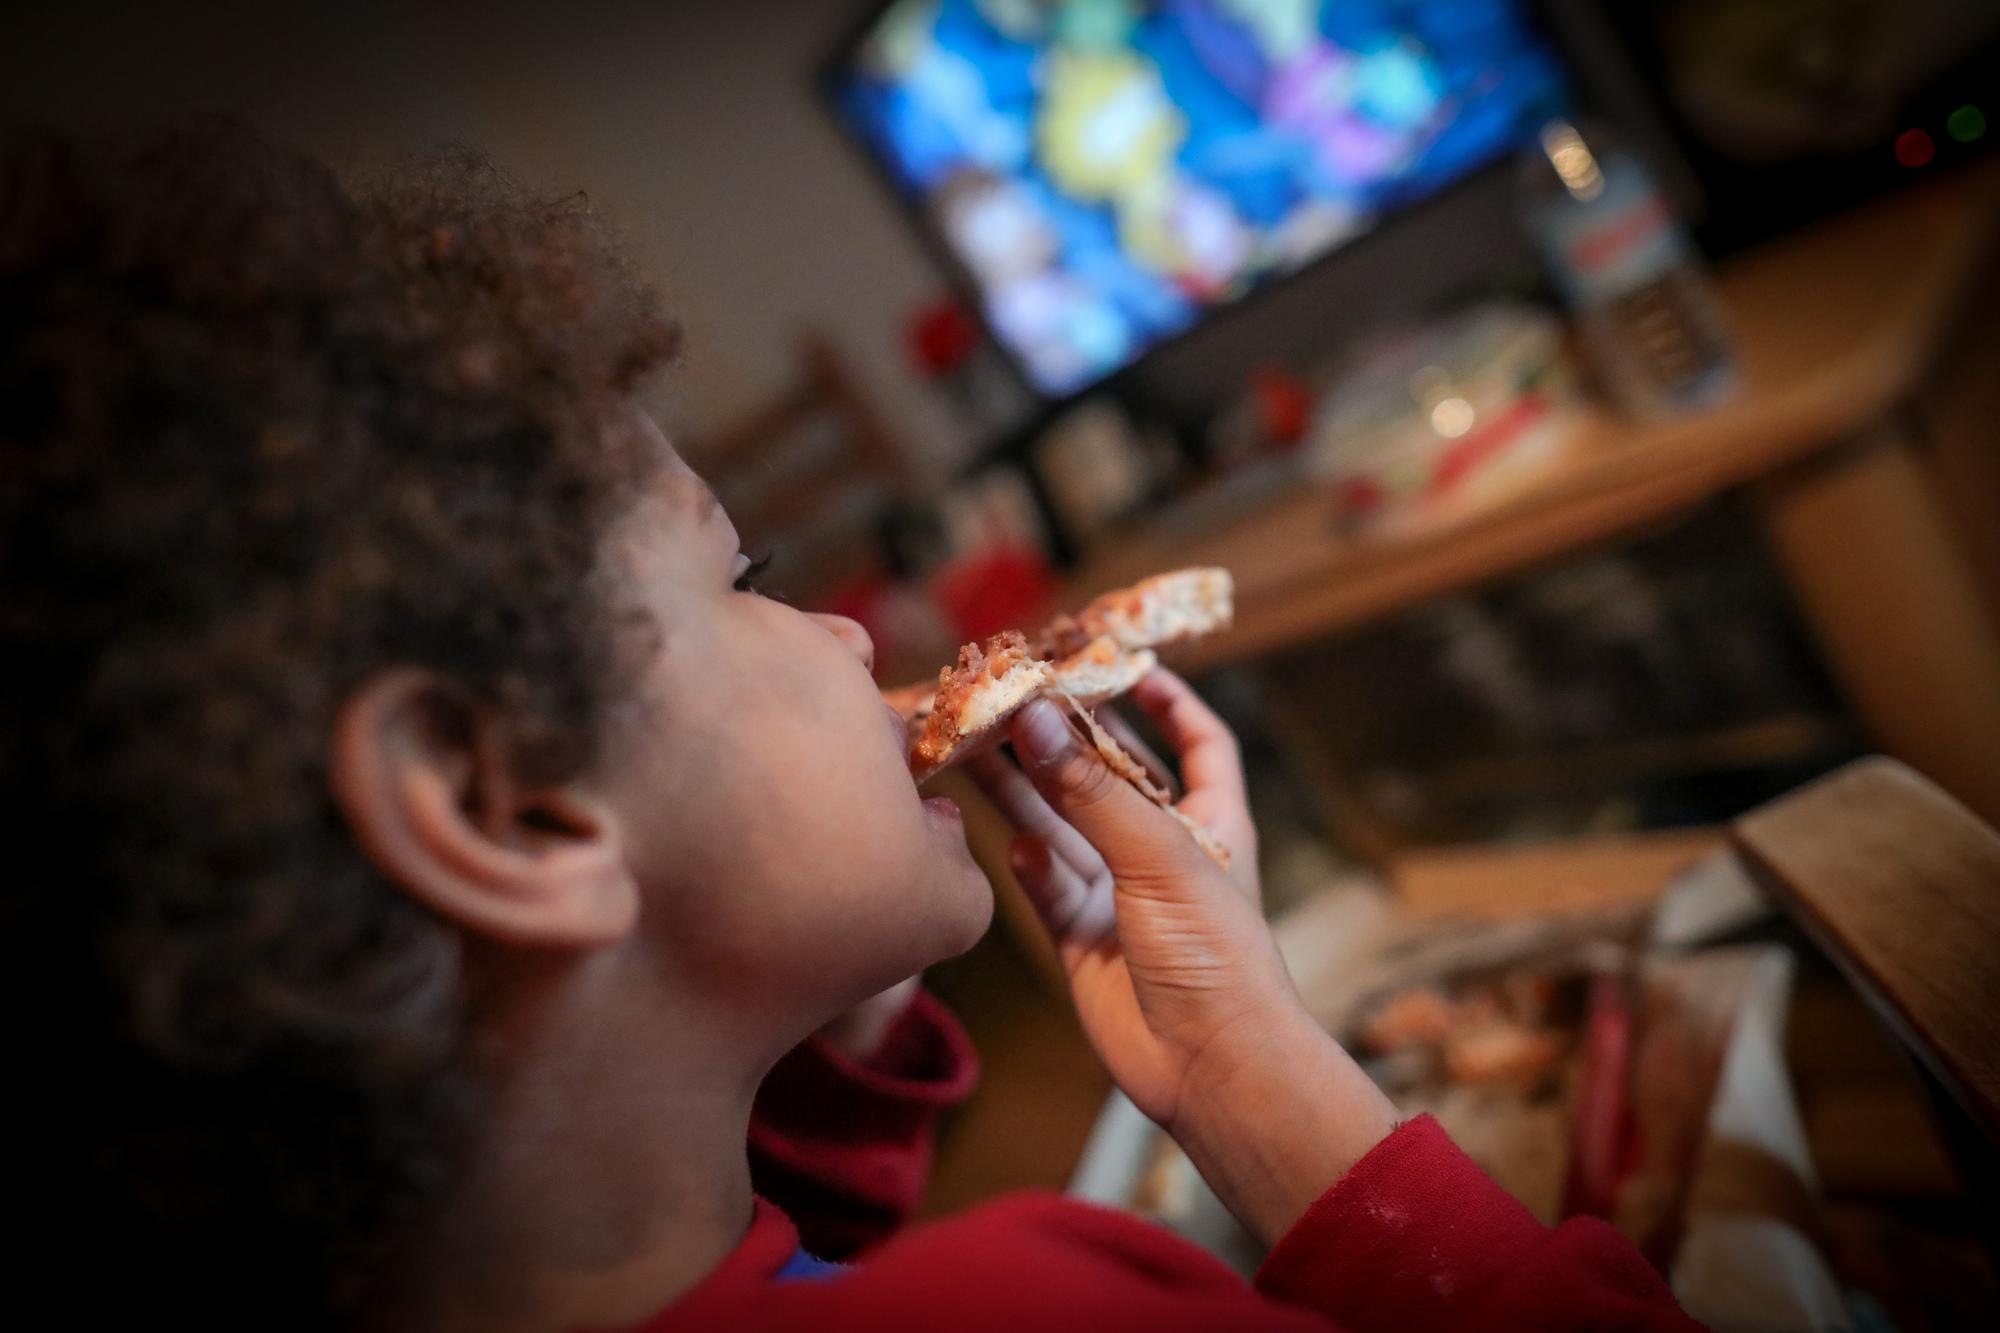 Menú infantil en tiempos de coronavirus: pizza, nuggets y refresco - 12